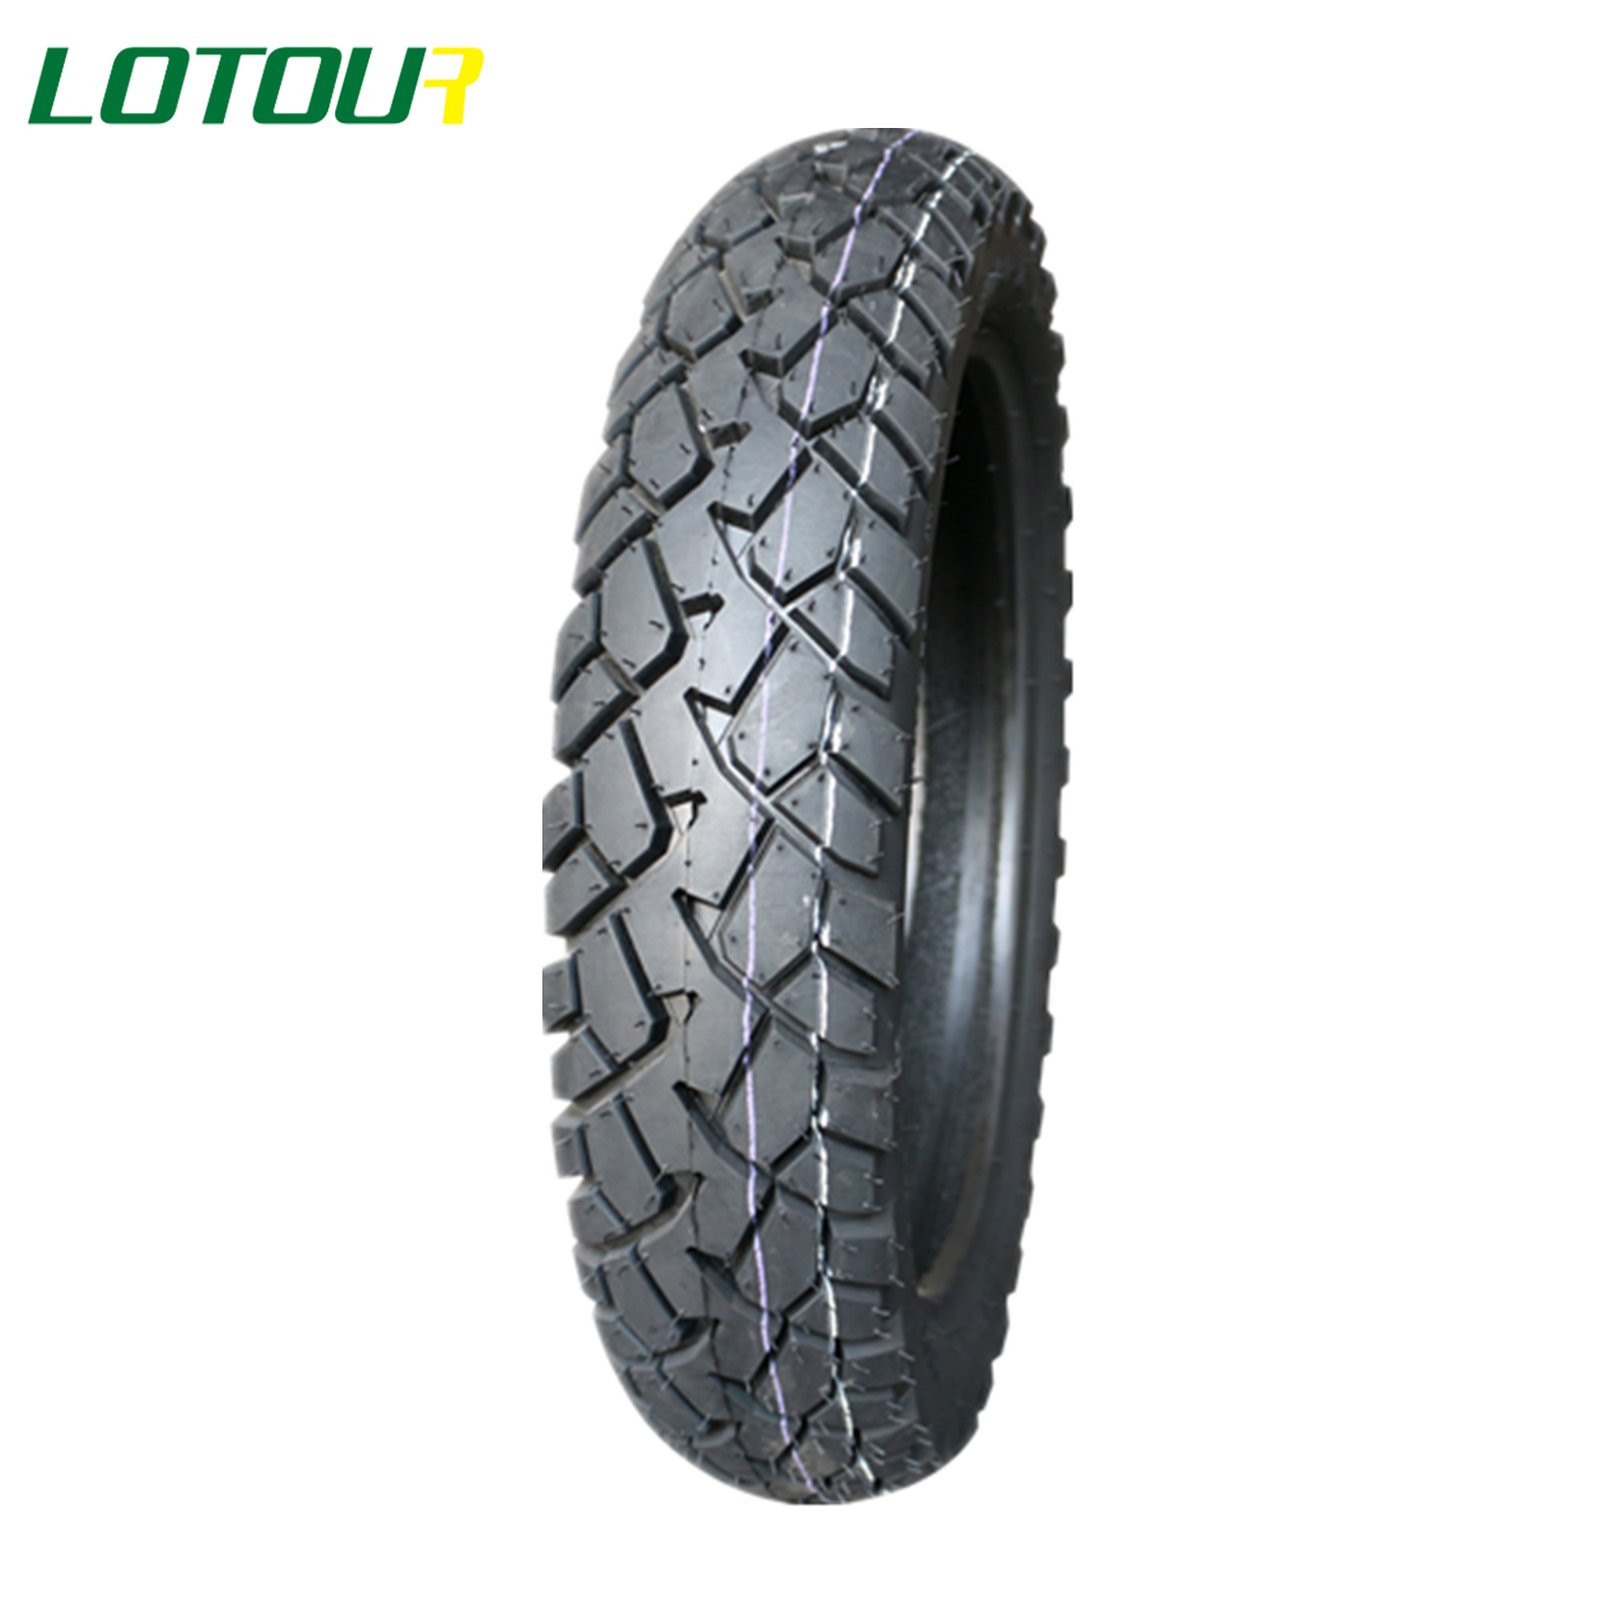 Lotour Tire M3044